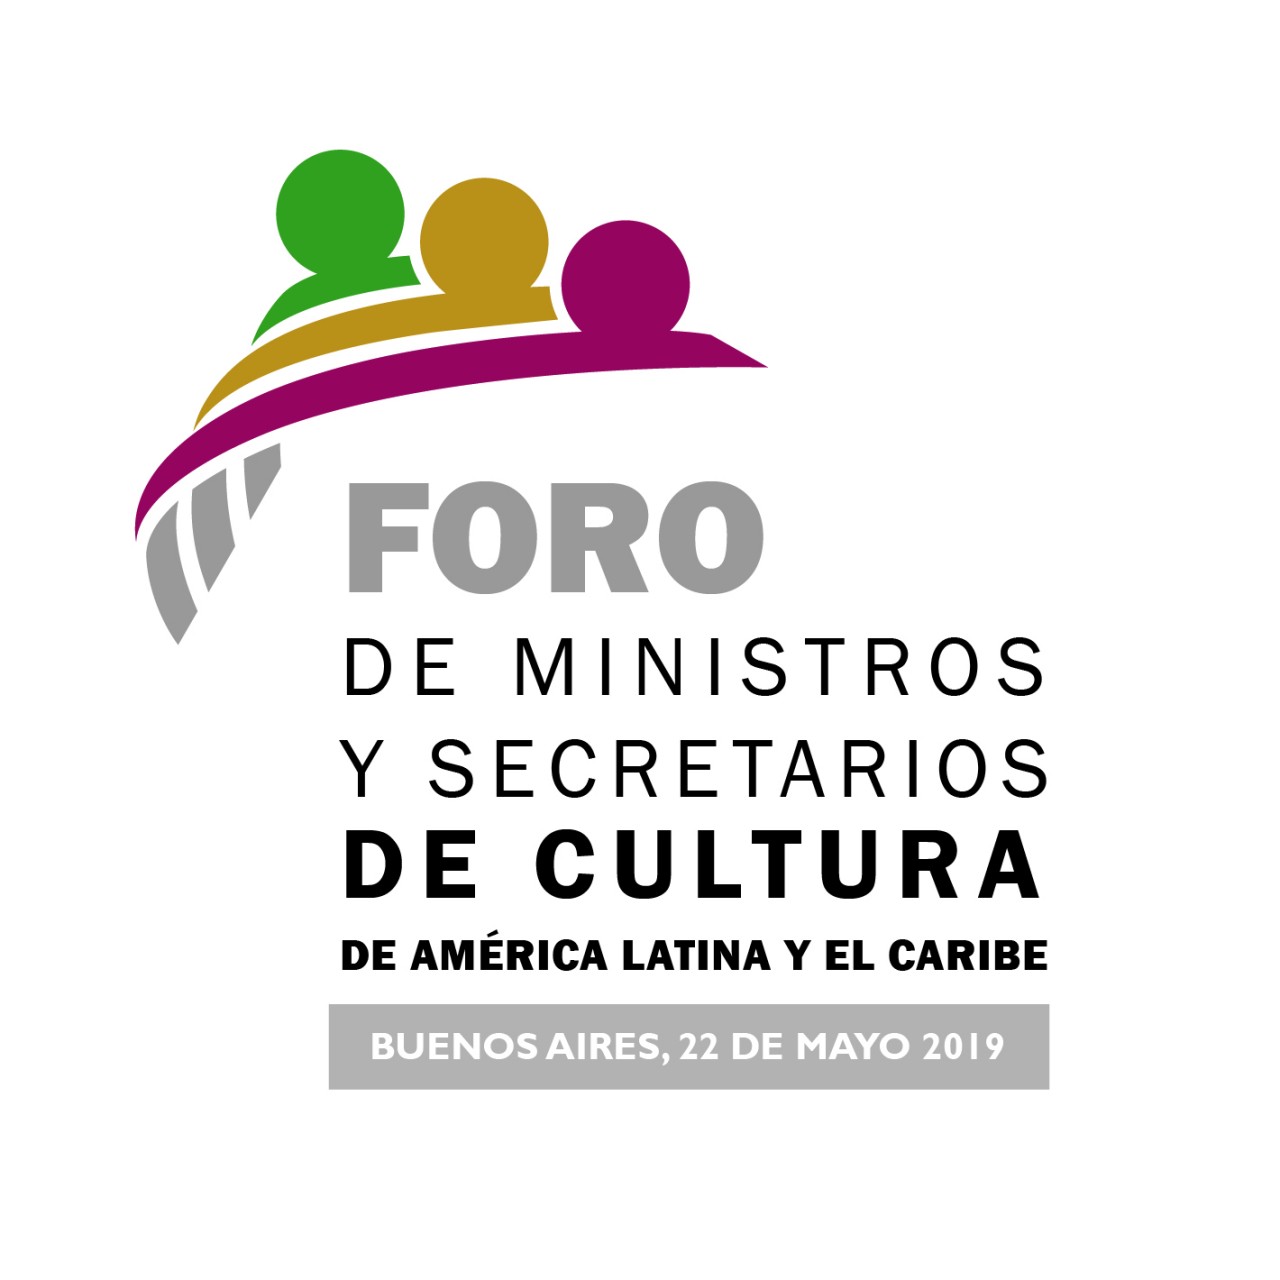 Foro de Ministros y Secretarios de Cultura de AmÃ©rica Latina y el Caribe